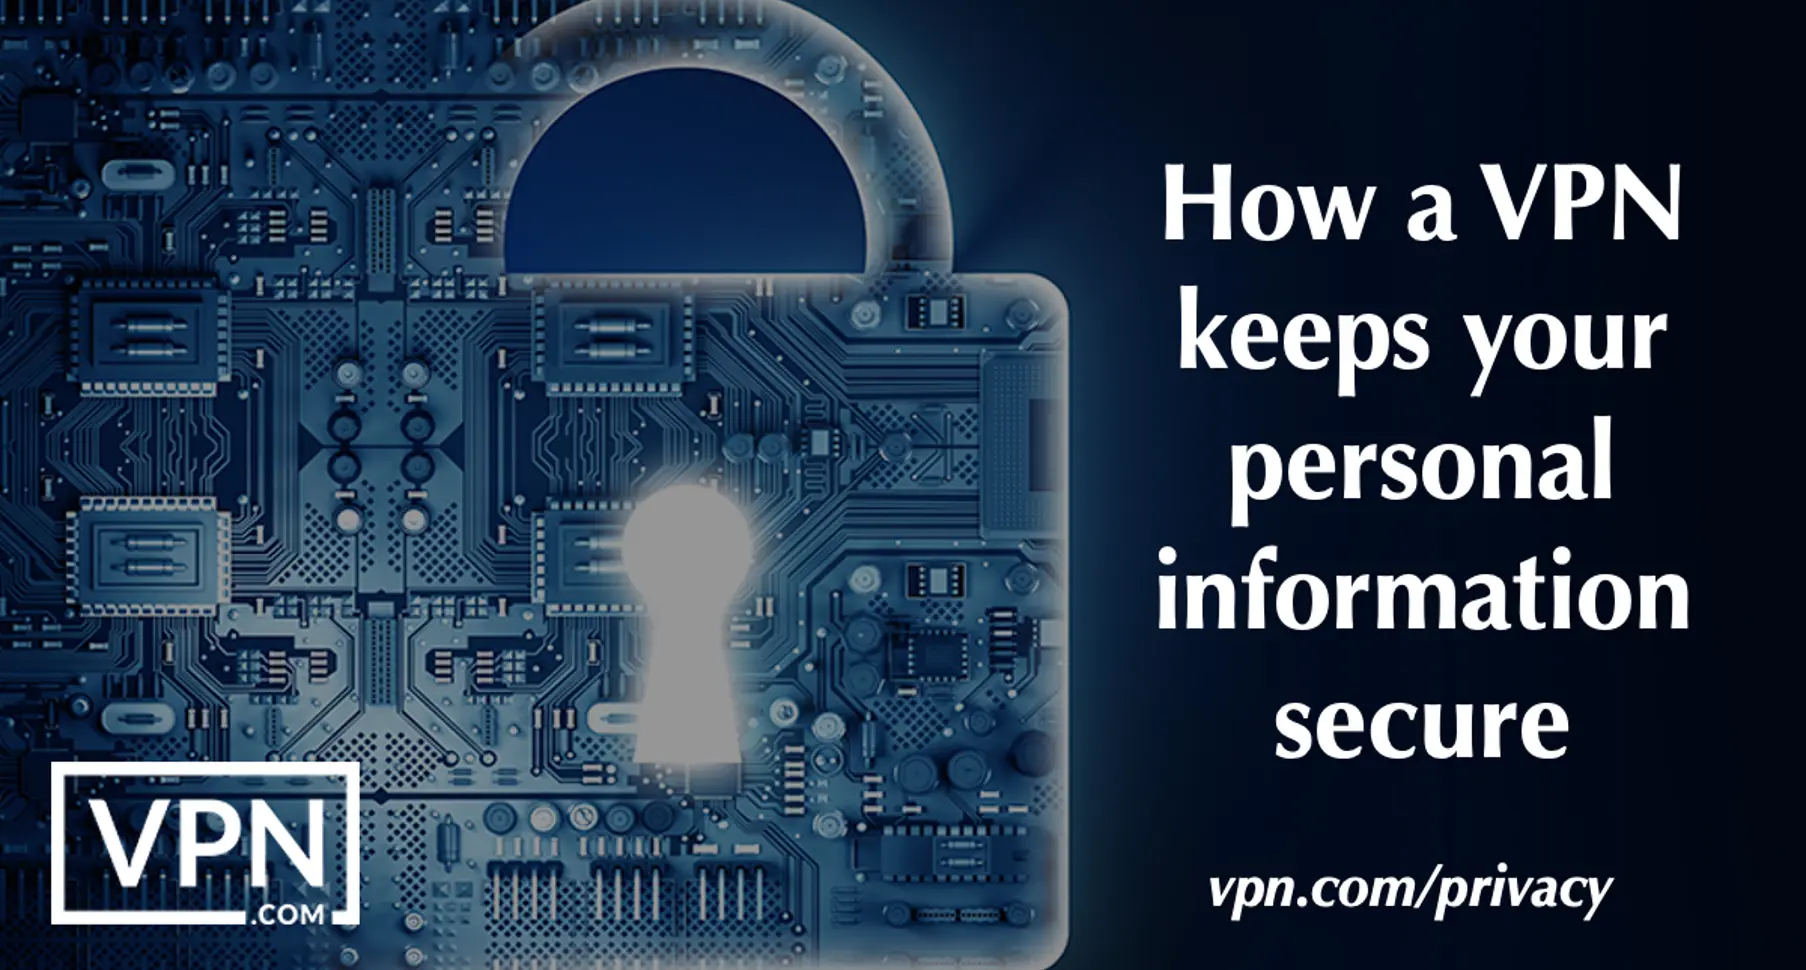 Kuidas VPN privaatsuse tagamiseks hoiab teie isikuandmeid turvaliselt.